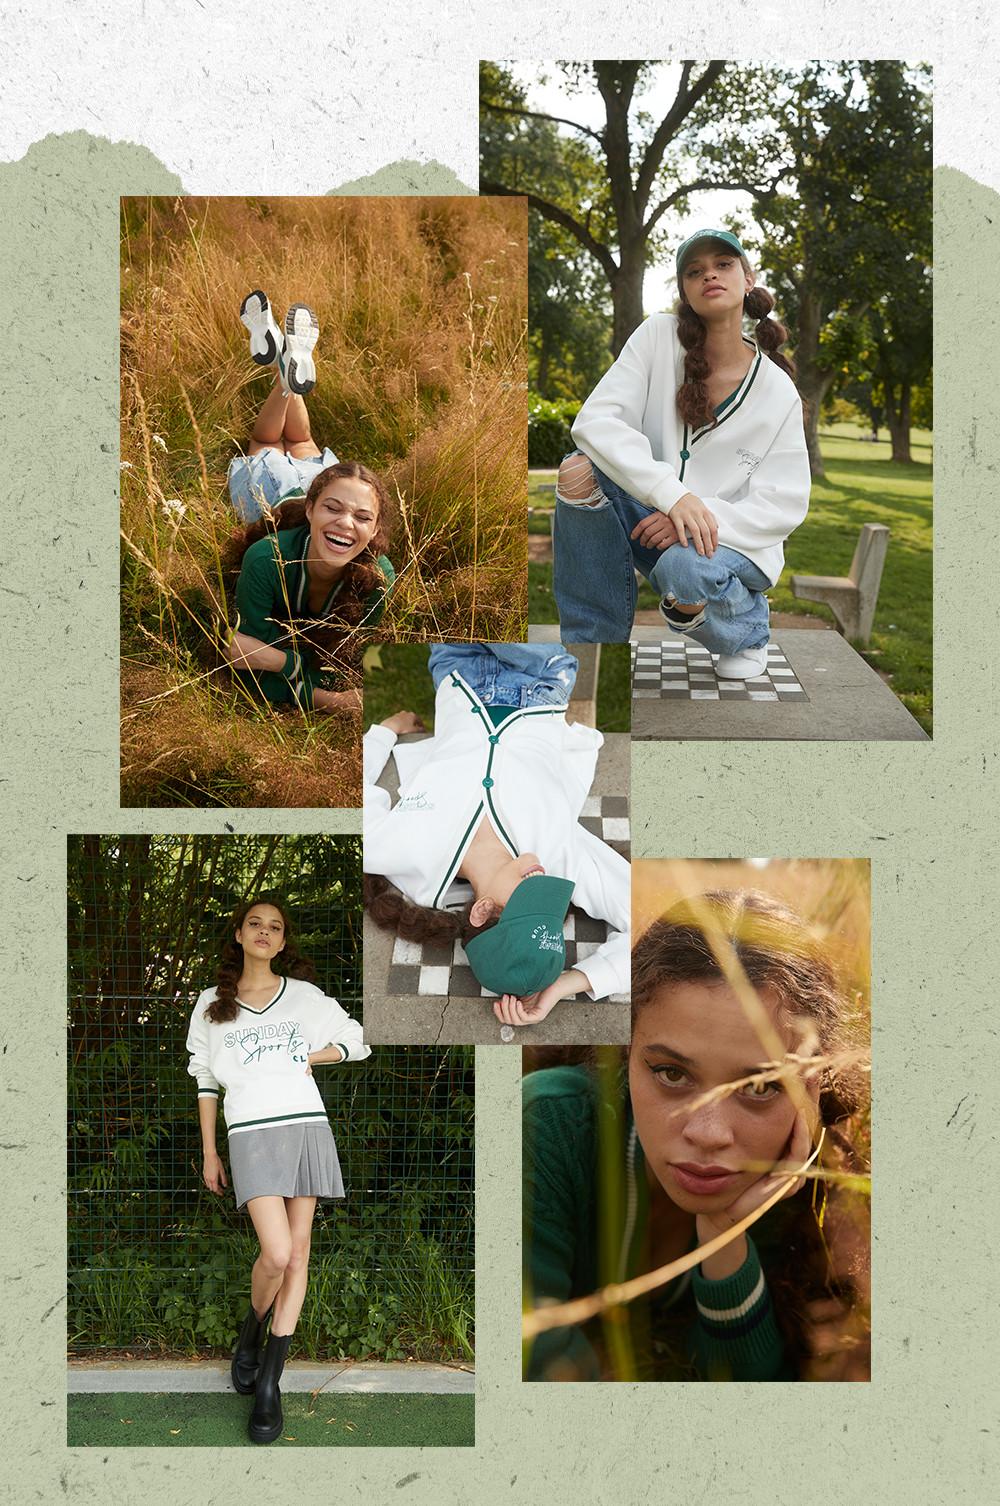 Models in der Preppy-Kleidung der 90er Jahre vor grünem Hintergrund